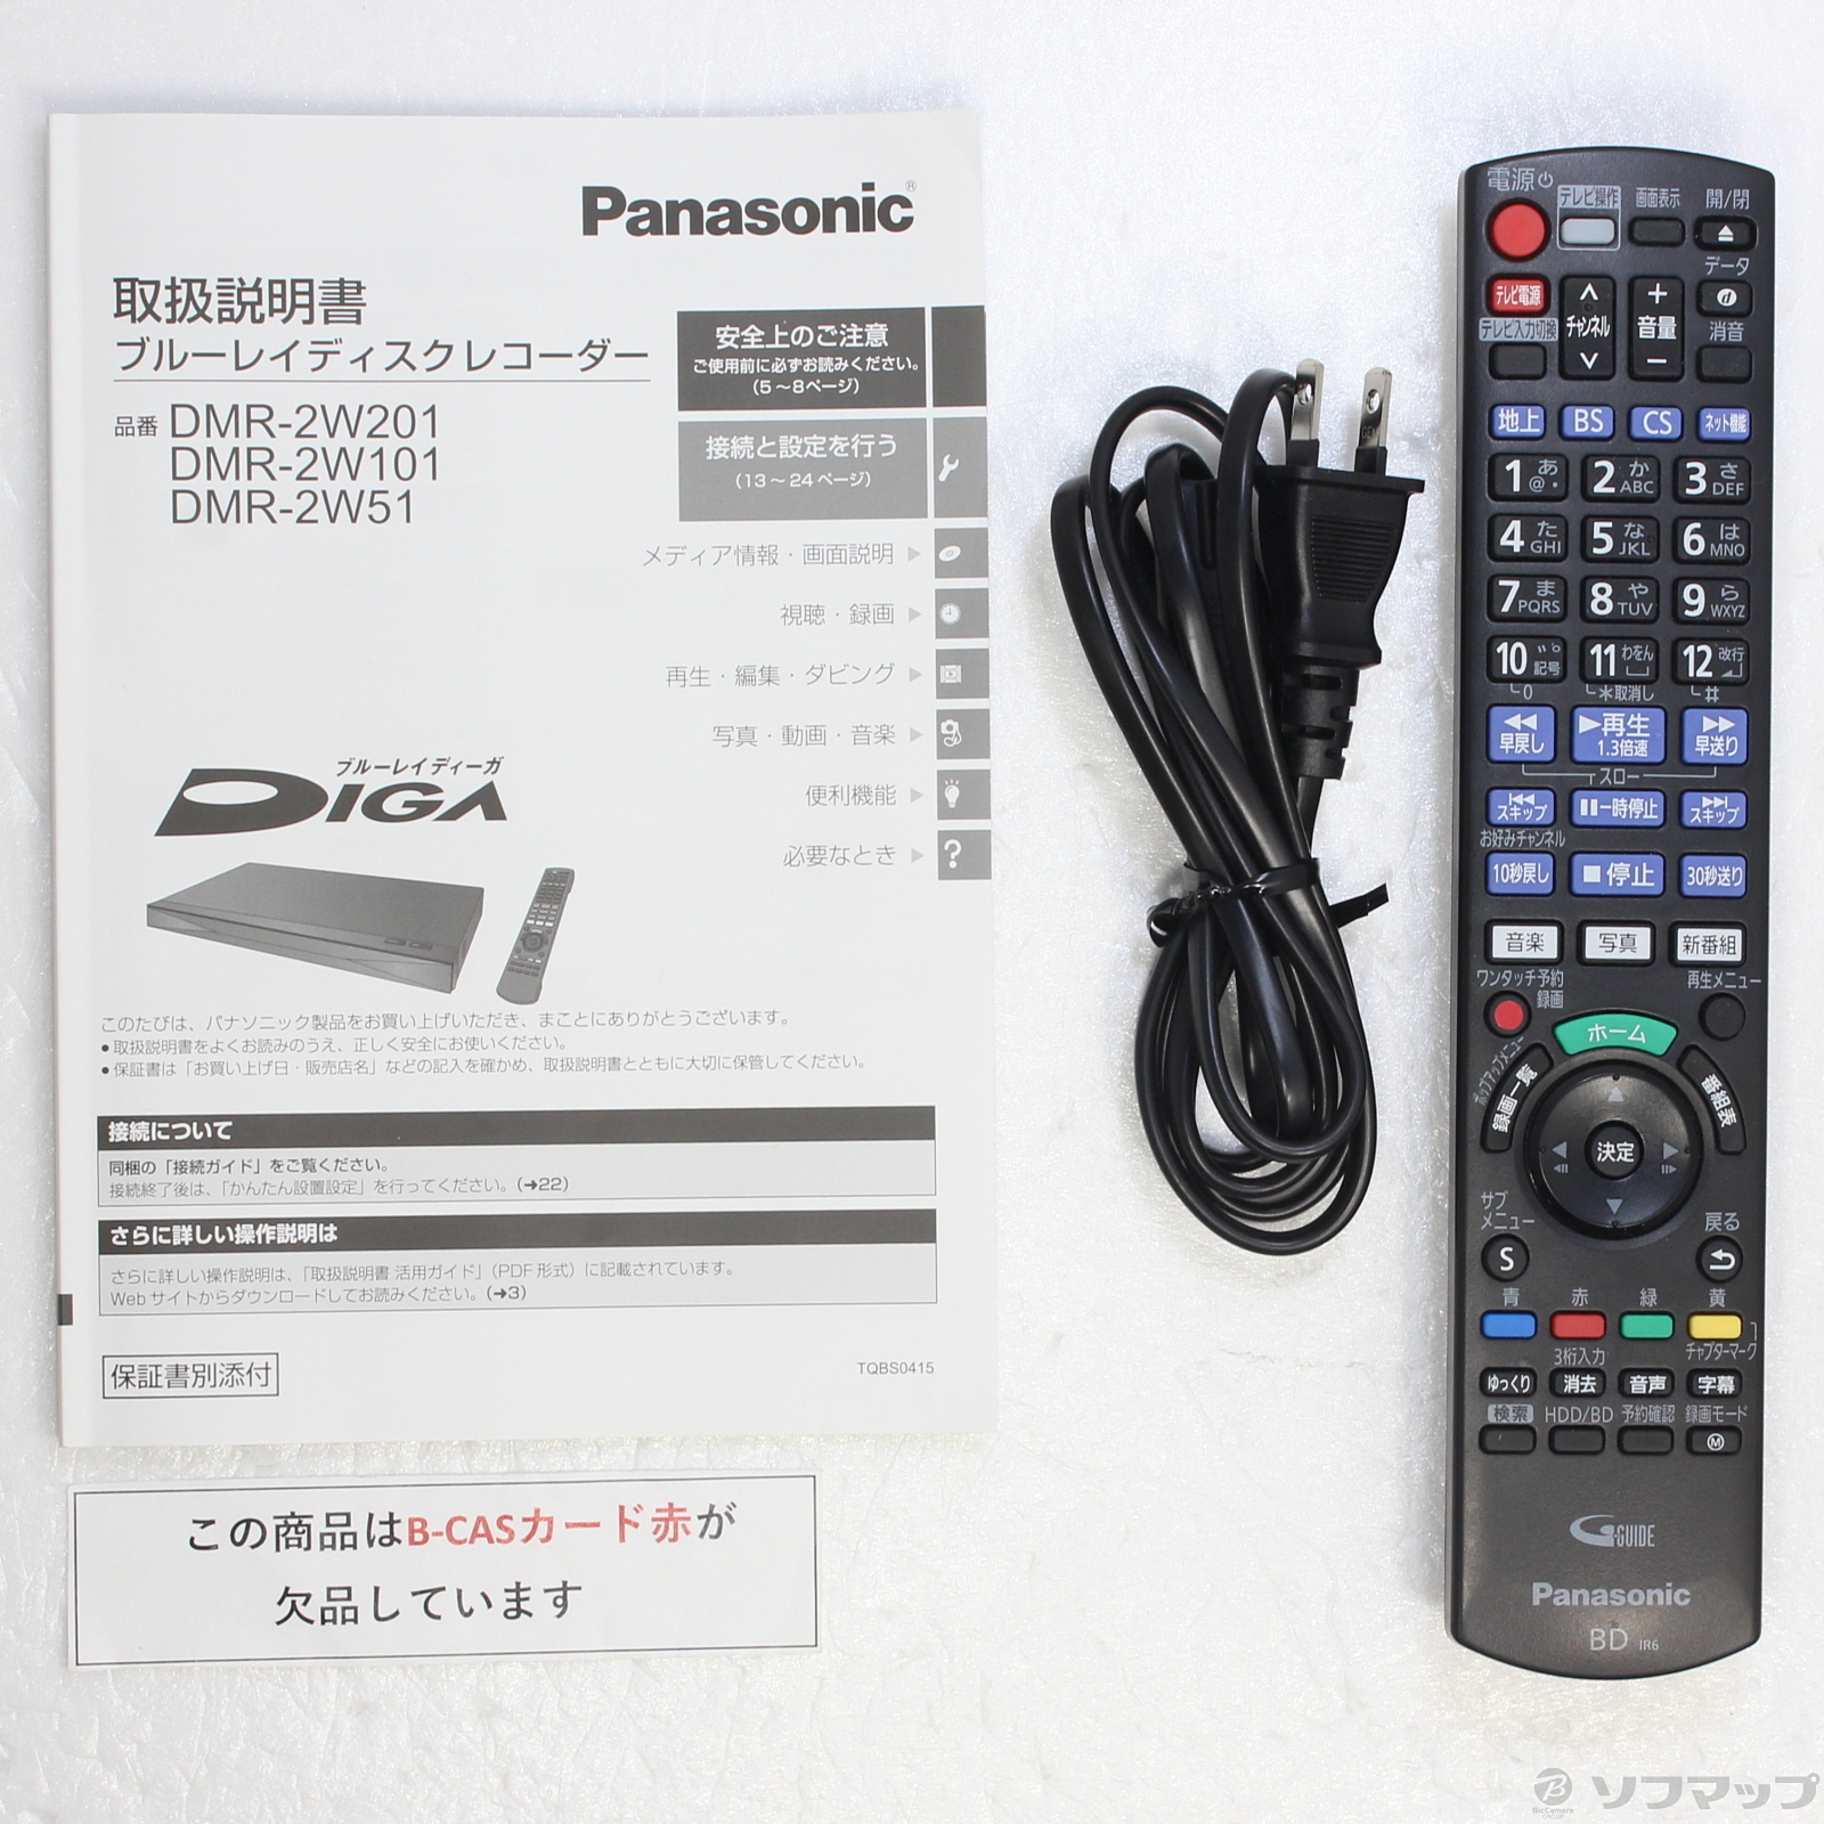 配送員設置 GS様 Panasonic ブルーレイレコーダー DIGA DMR-2W201